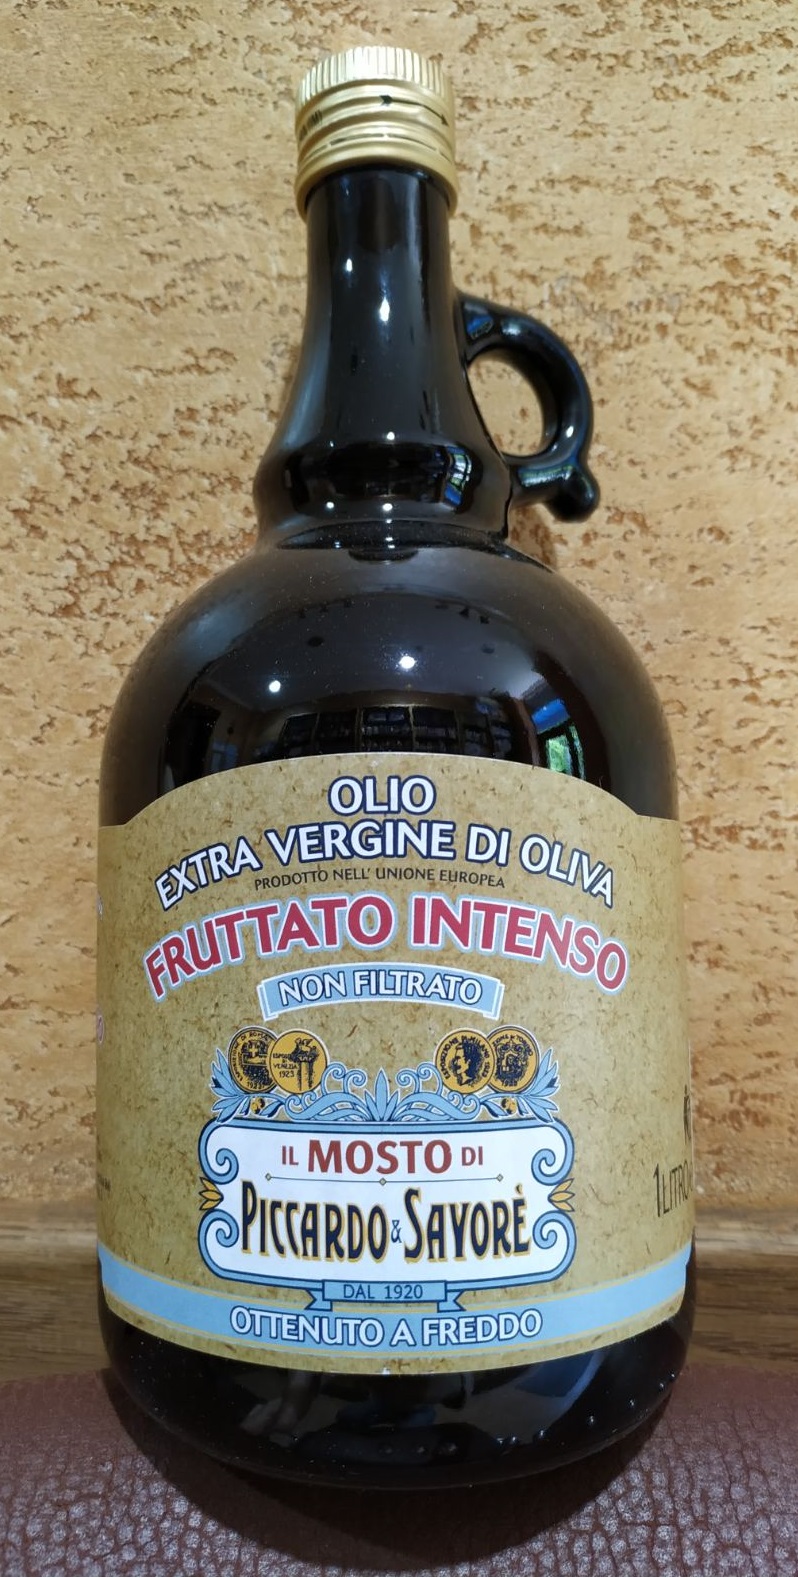 Оливковое масло Piccardo & Savore Olio Extra Vergine di oliva нефильтрованное нерафинированное Италия 1 литр